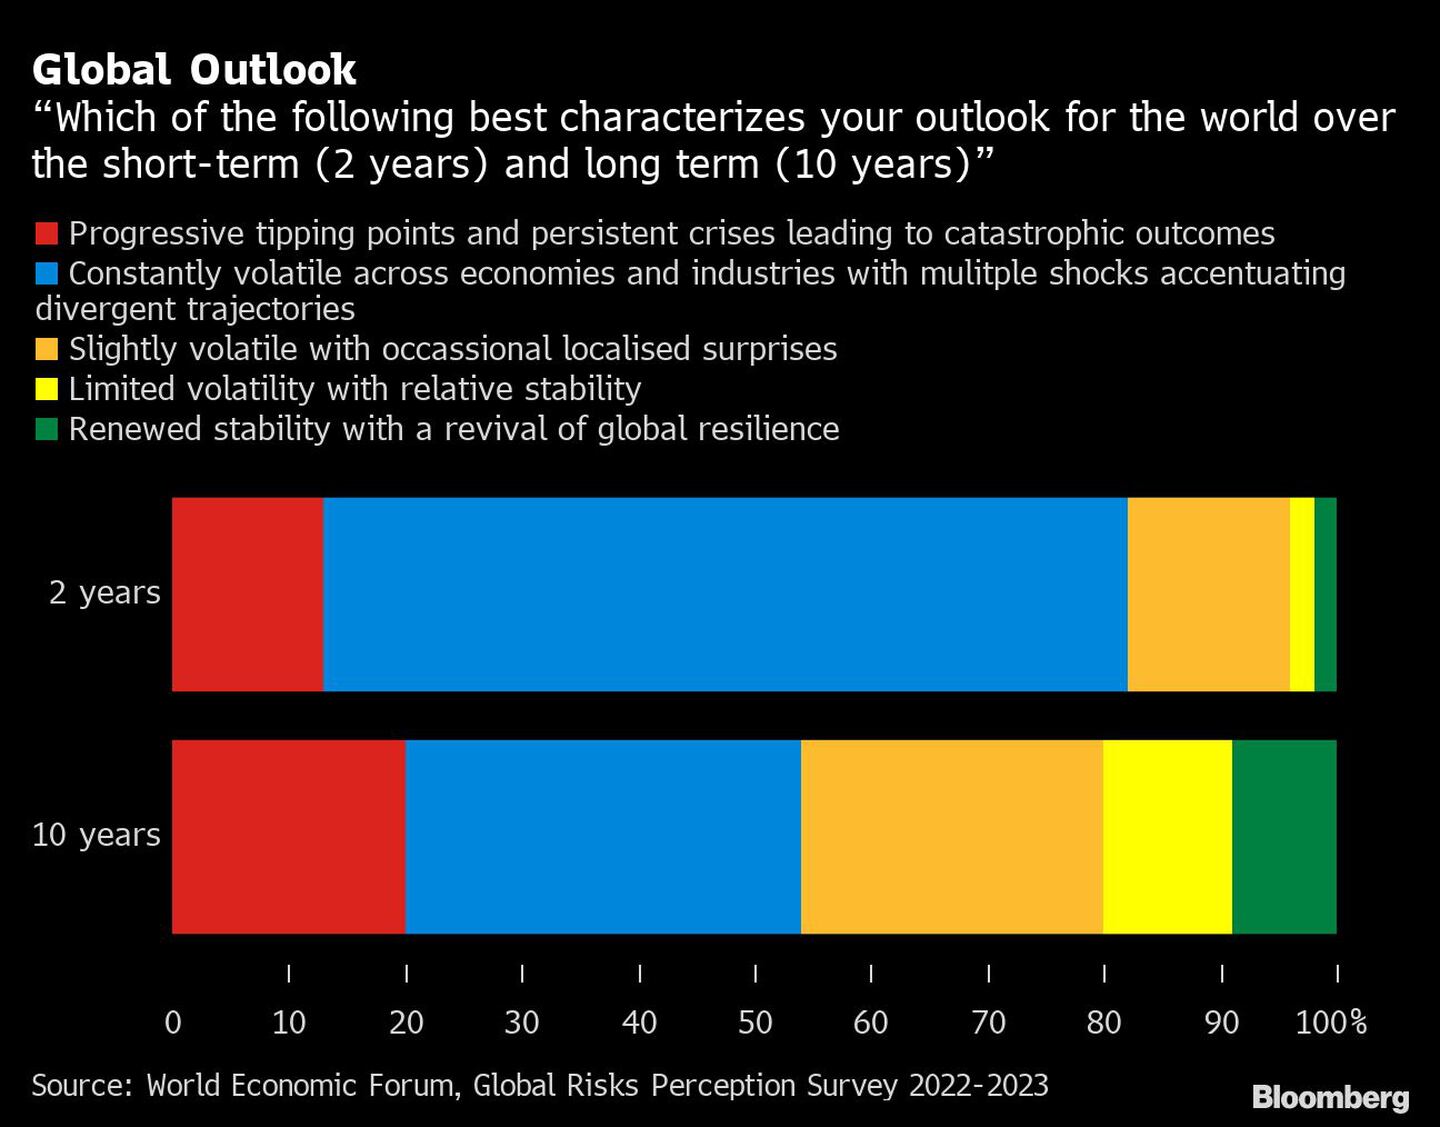 ¿Cuál de las siguientes opciones caracteriza mejor sus perspectivas mundiales a corto plazo (2 años) y a largo plazo (10 años)?dfd